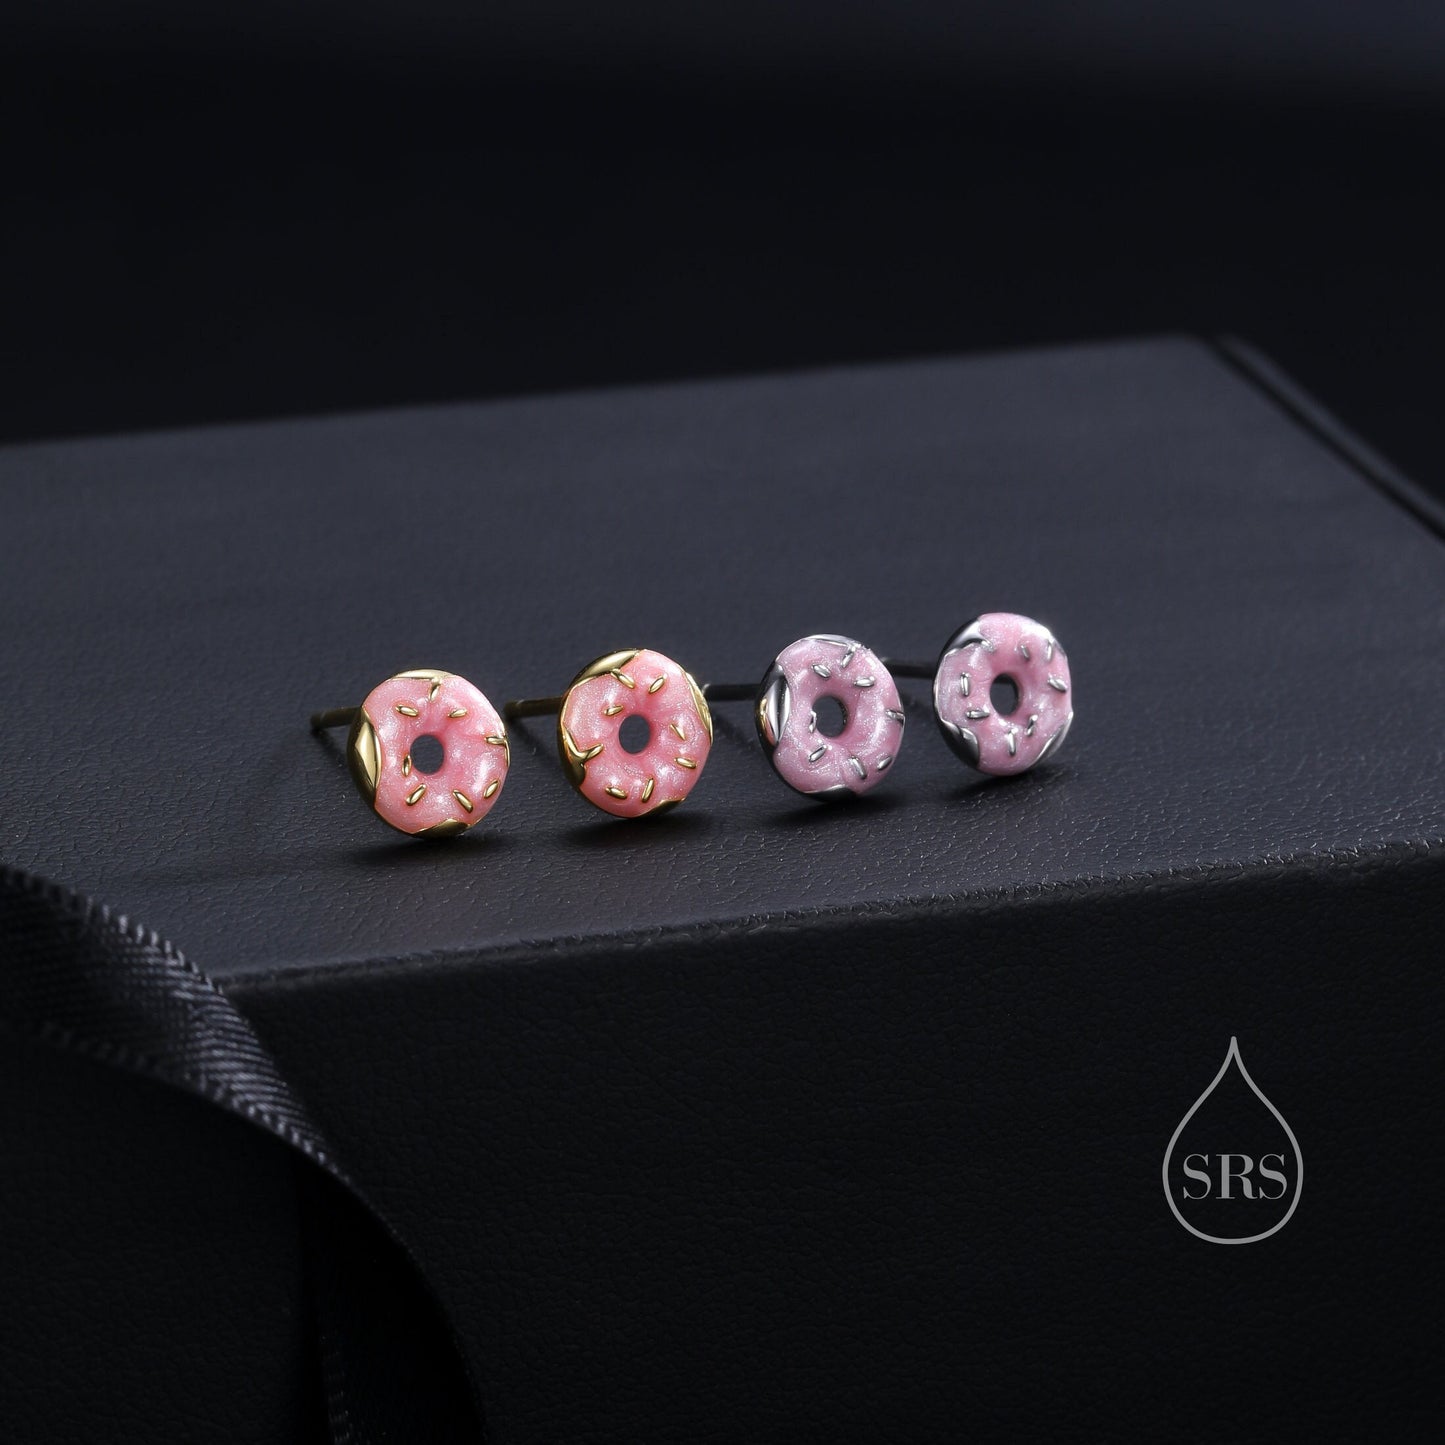 Enamel Glazed Donut Stud Earrings in Sterling Silver, Silver or Gold, Donut Earrings, Food Earrings